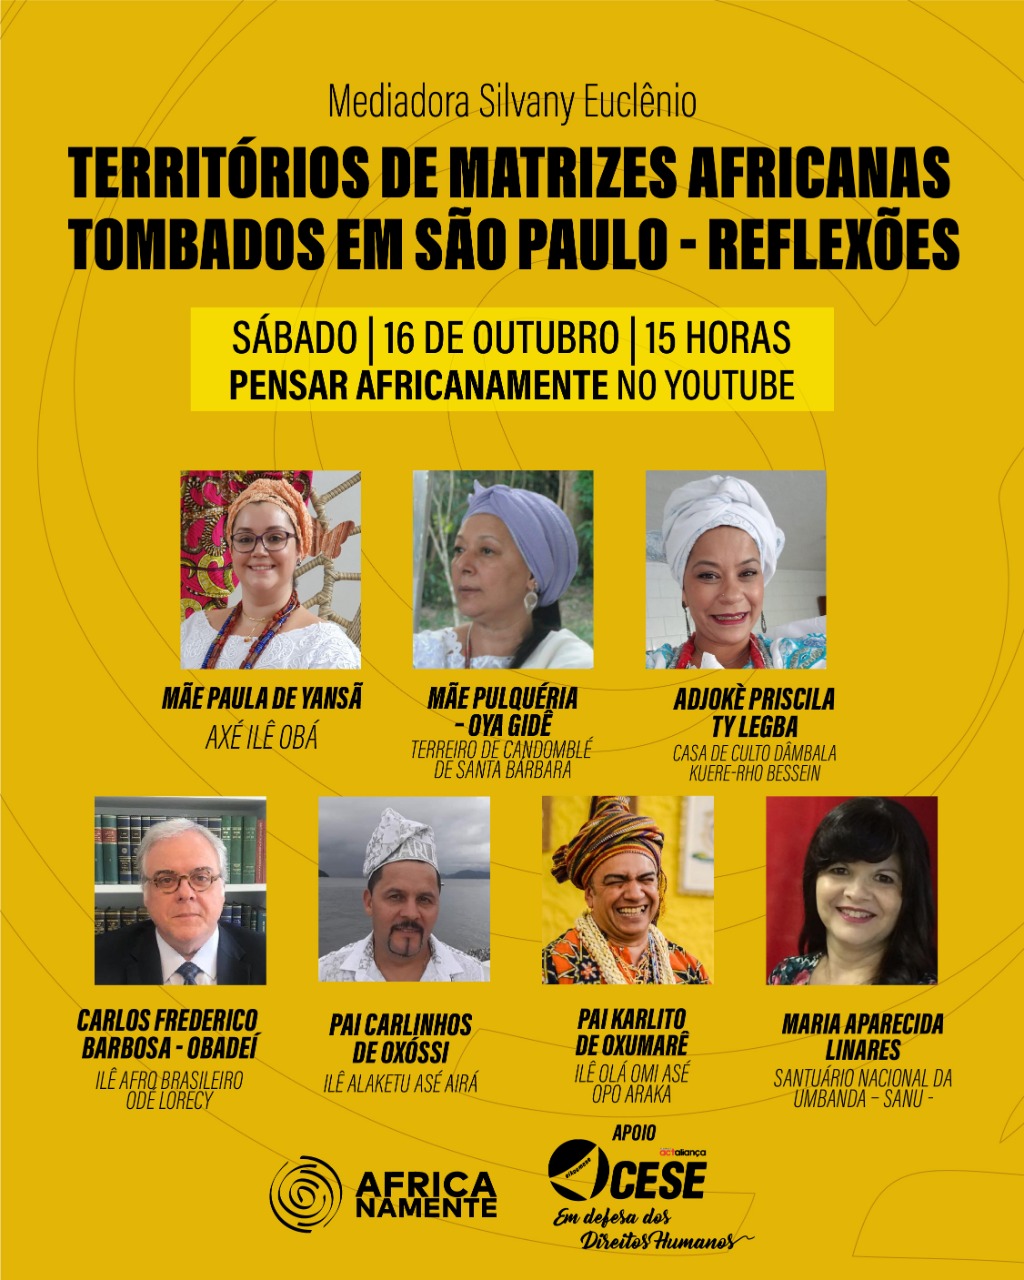 EVENTO ONLINE AMANHÃ – Sábado 16.10.2021 – TERRITÓRIOS DE MATRIZES AFRICANAS TOMBADOS EM SÃO PAULO